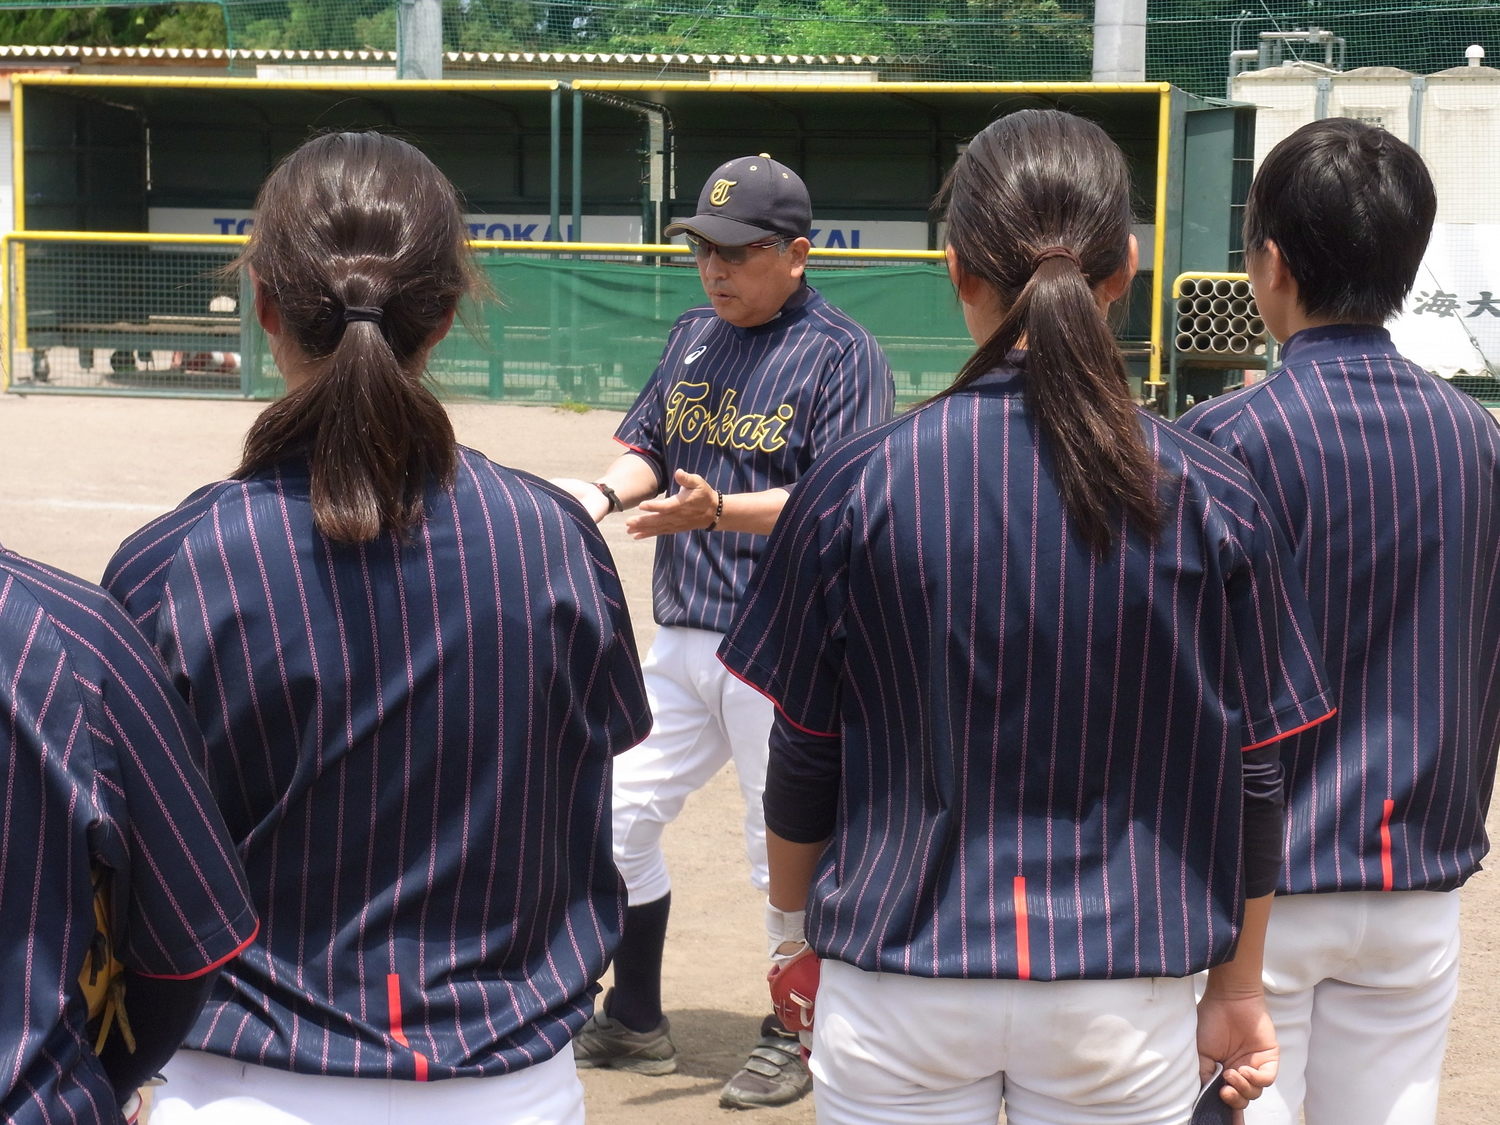 女子野球が広がることで男子野球の仕組みも 静岡初の女子高校野球部 監督 校長が取り払う先入観と固定観念とは 高校野球 Number Web ナンバー